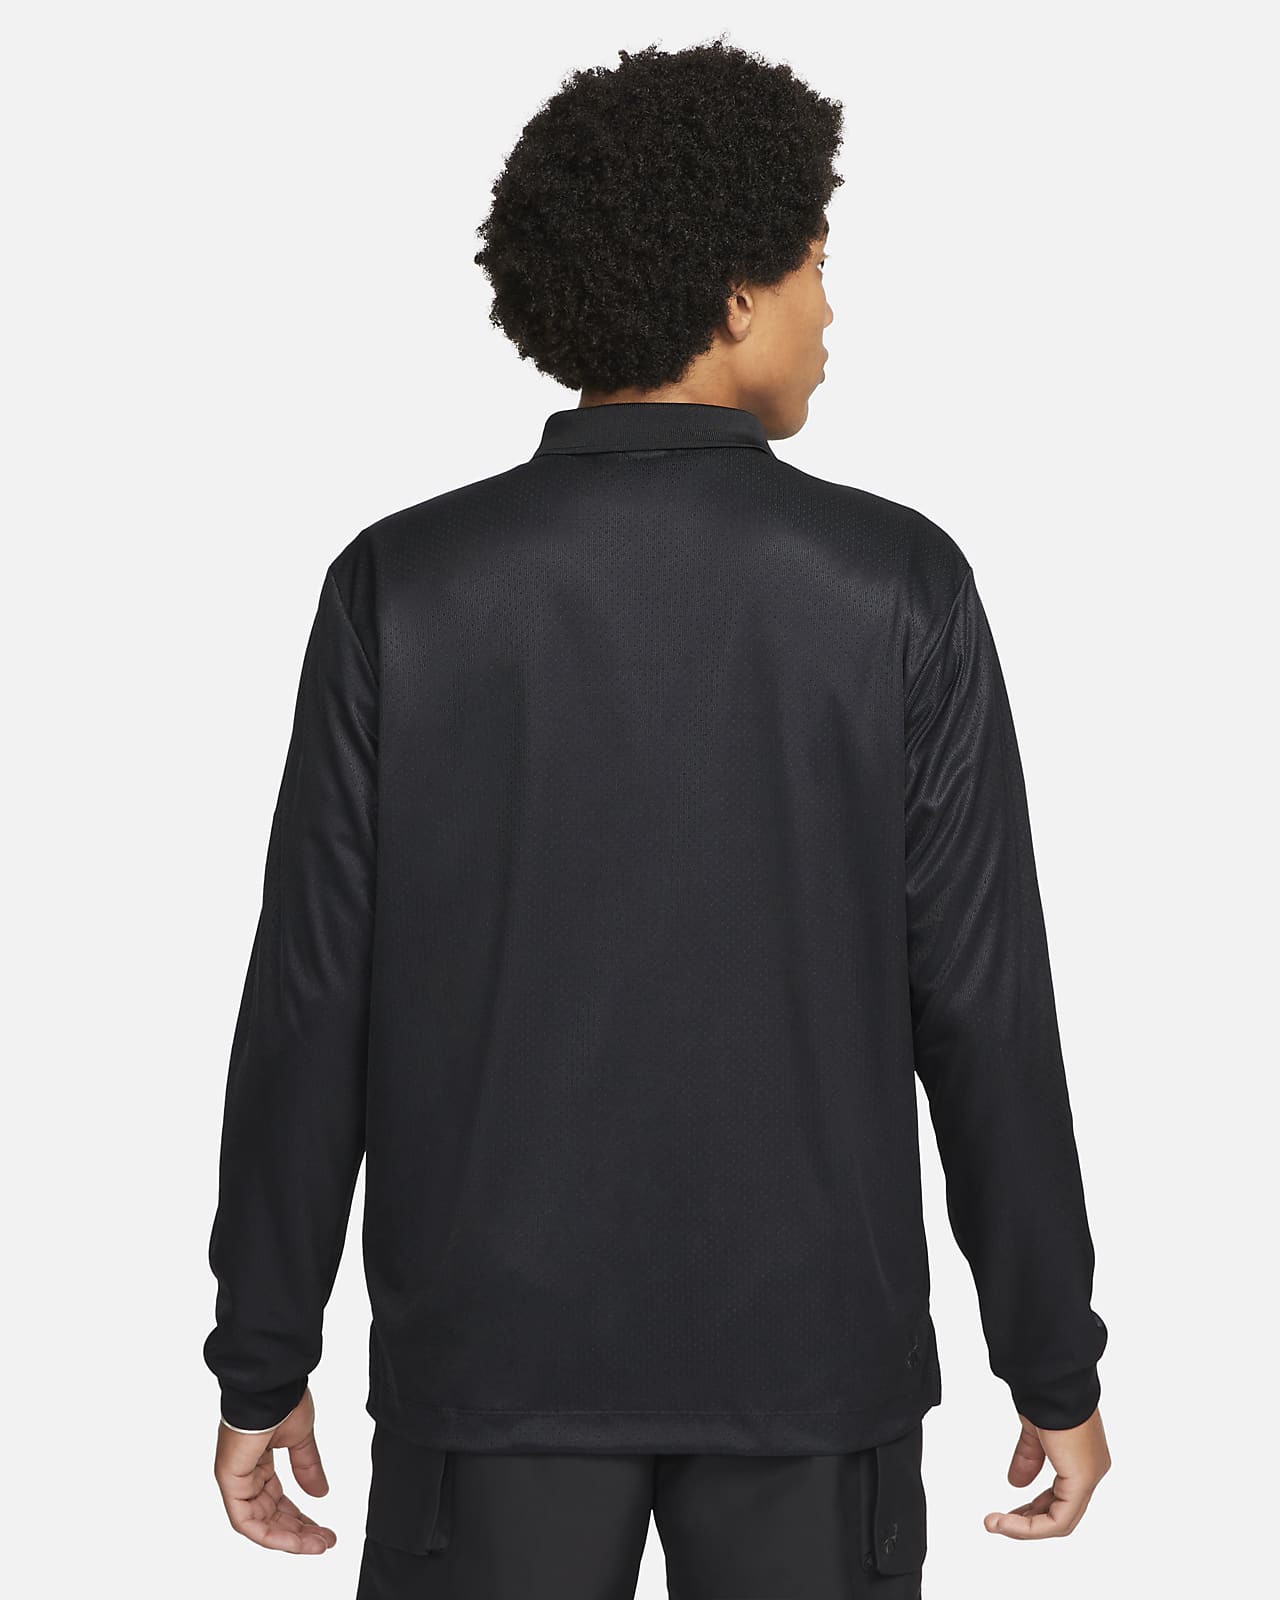 Nike Sportswear Tech Pack Men's Dri-FIT 1/2-Zip Long-Sleeve Top